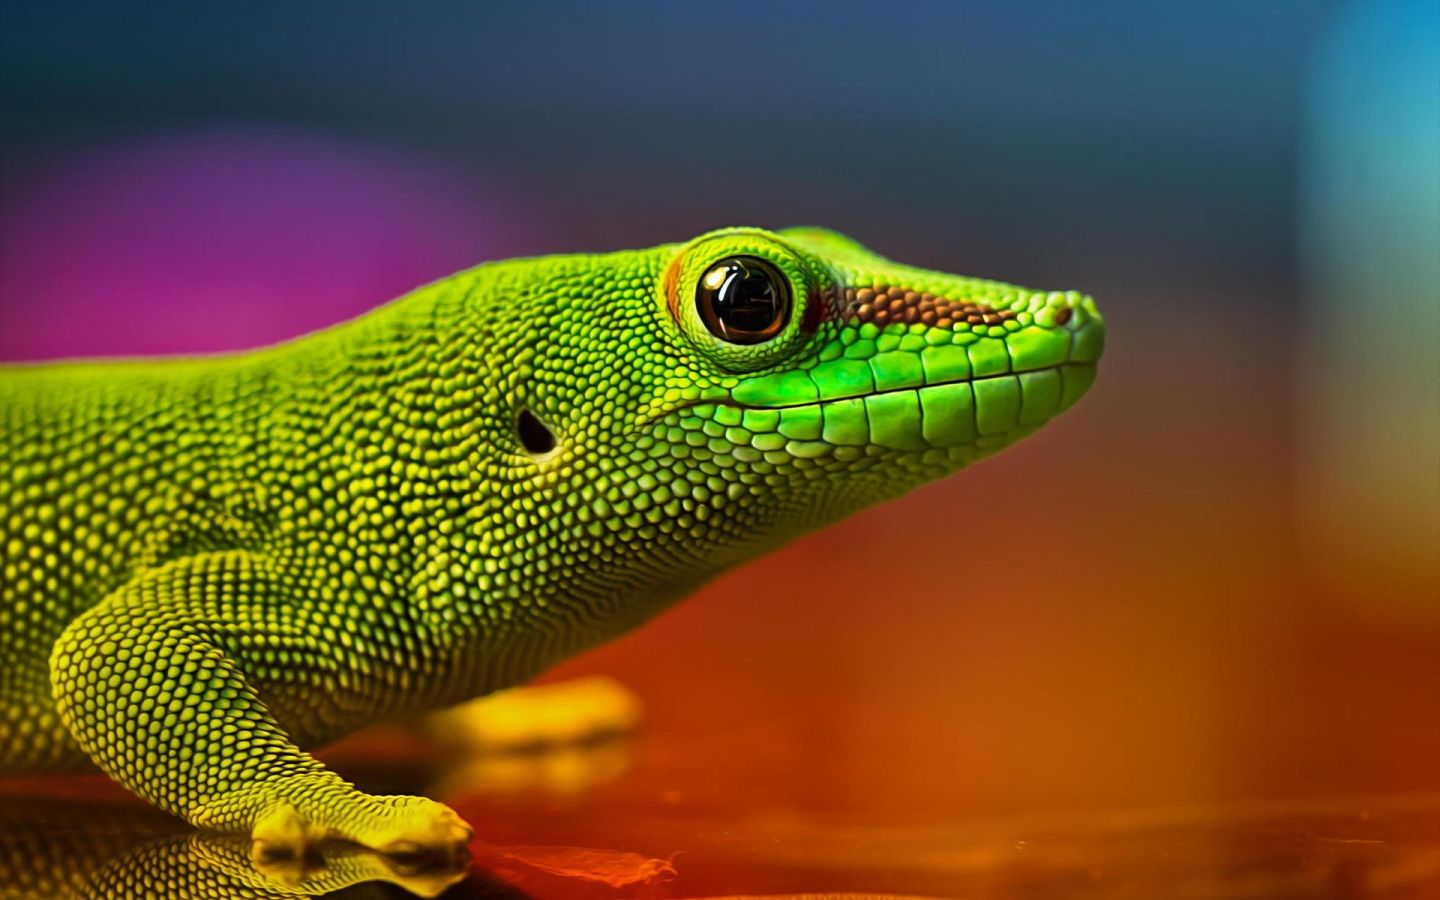 Green Lizard for 1440 x 900 widescreen resolution